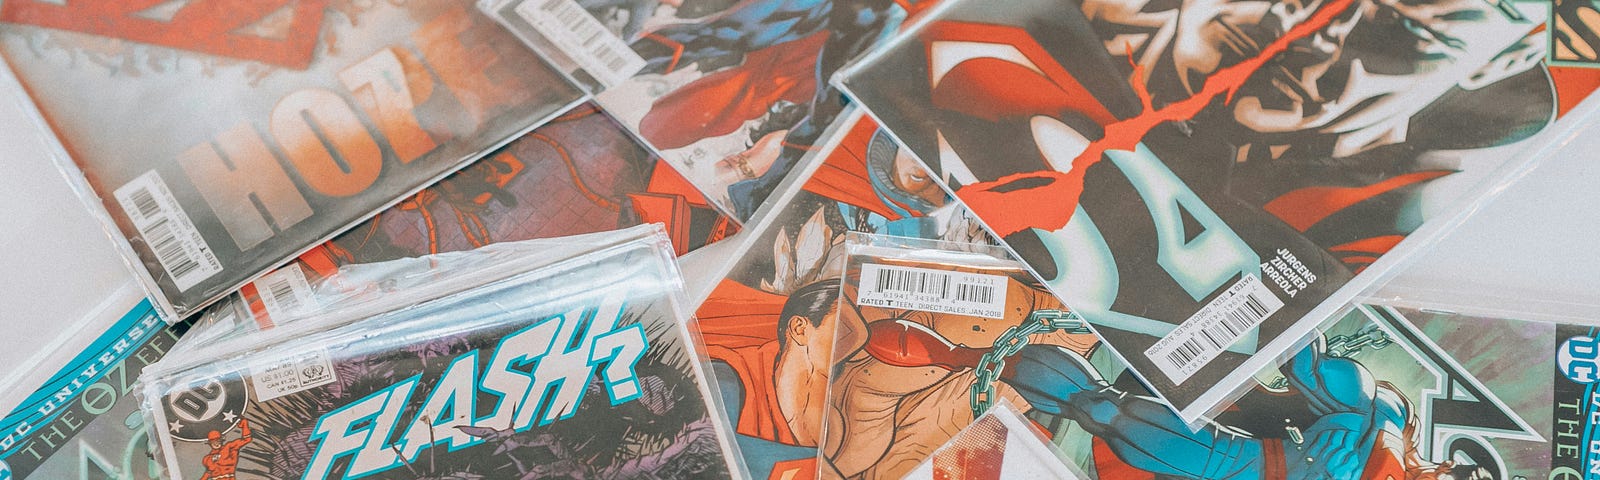 Pic of superhero comic books.